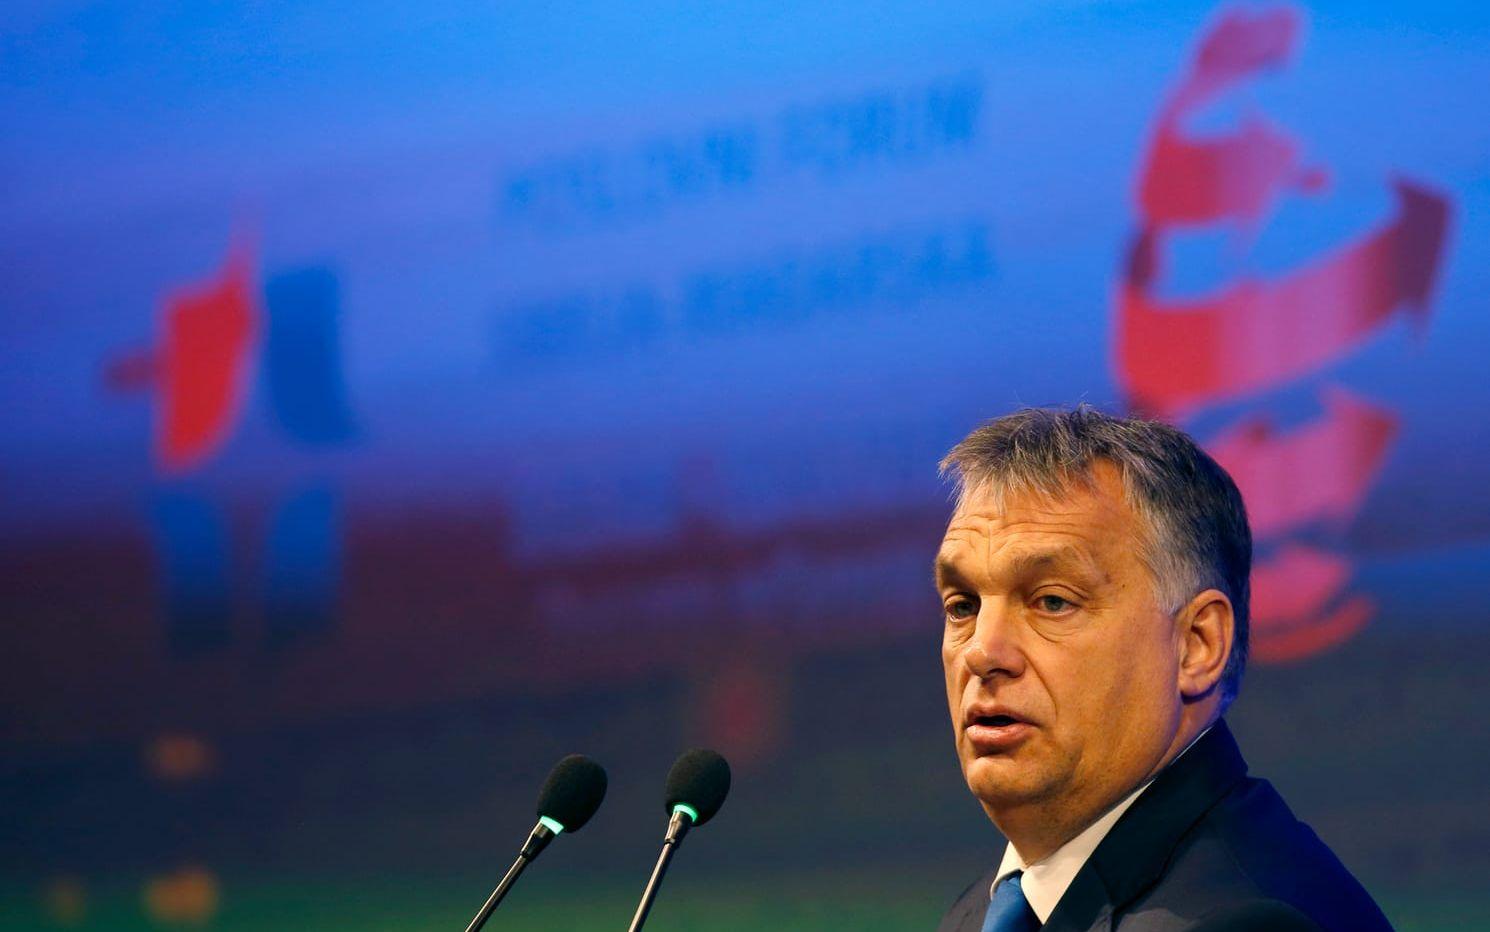 Ungerns premiärminister Viktor Orban har kallat flyktingarna för "terrorns trojanska häst". Bild: TT